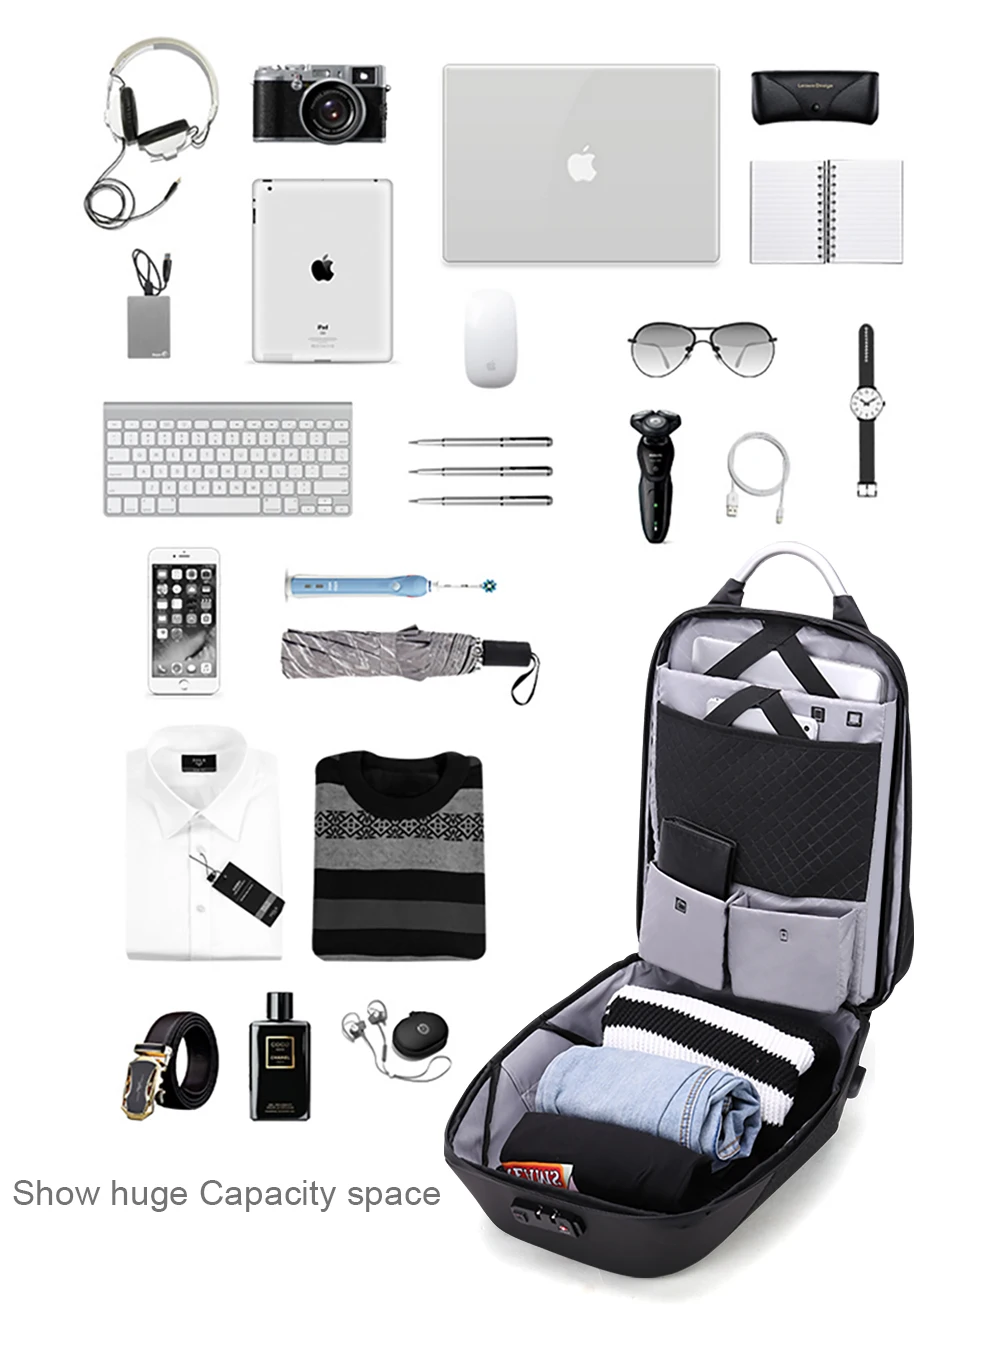 Рюкзак для ноутбука ARCTIC HUNTER School 15,6, мужской водонепроницаемый рюкзак Mochila, Повседневный, для путешествий, бизнеса, USB, рюкзак, мужская сумка, Противоугонный подарок